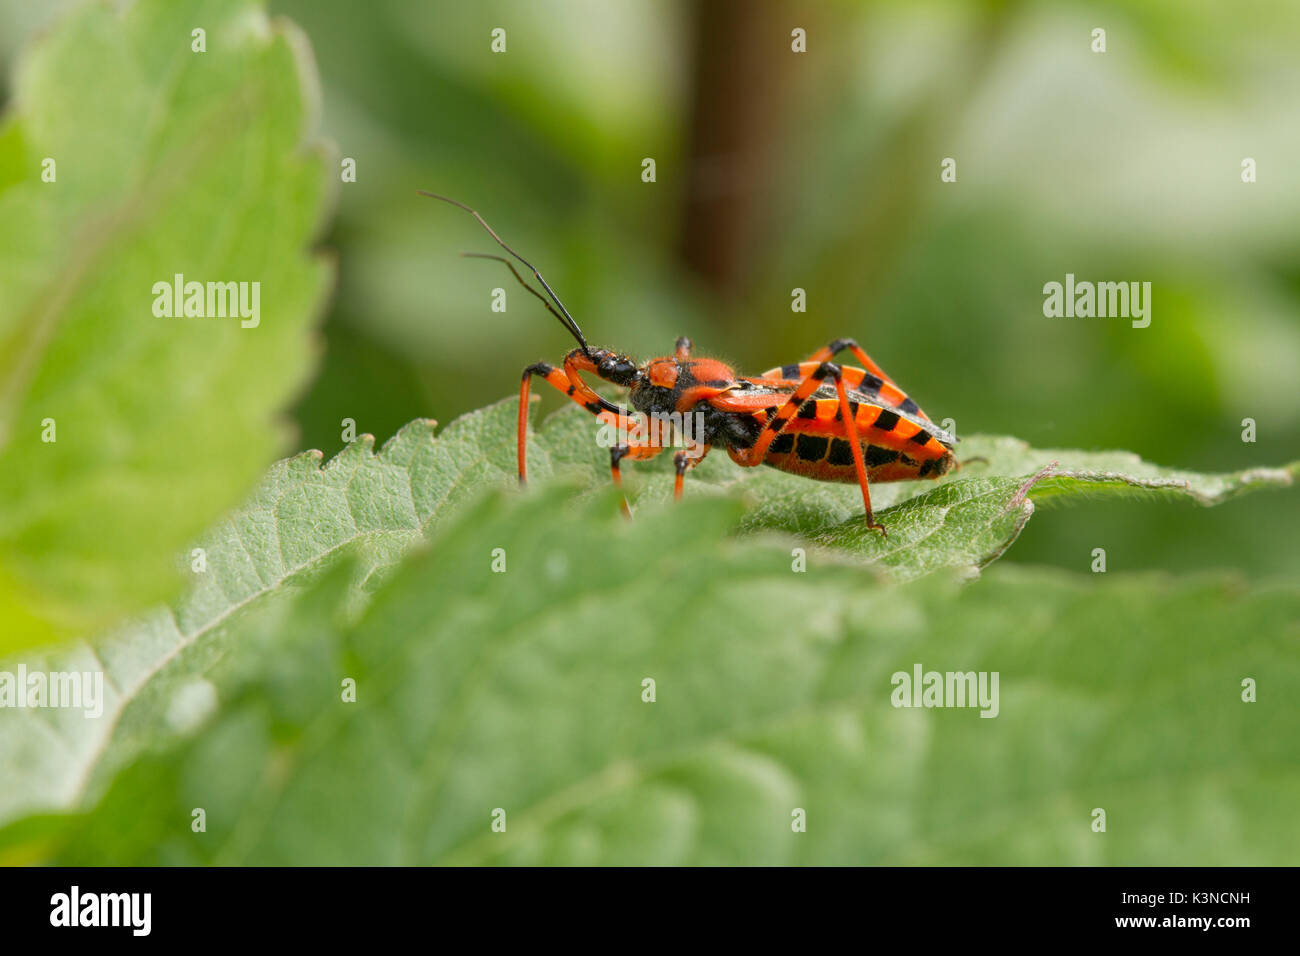 Le close-up d'assassin bugs insectes rouge et noir ou Rhynocoris iracundus. La Lombardie, Italie Banque D'Images